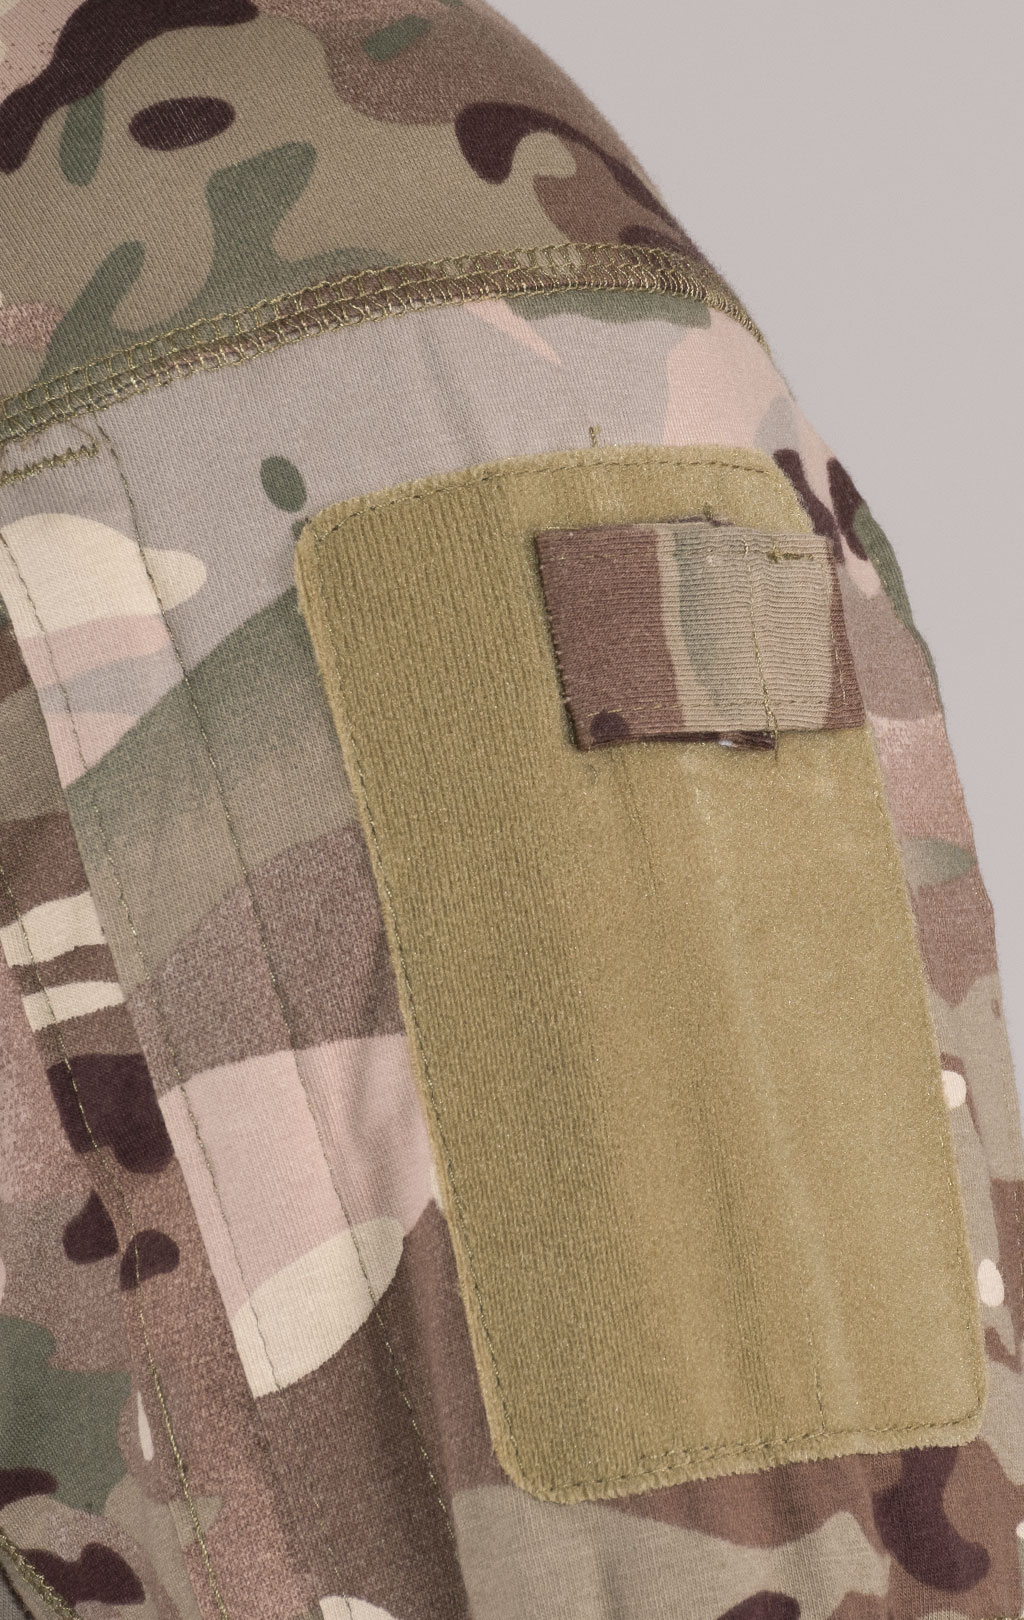 Рубашка Combat Shirt 93%хлопок/7%spandex multicam UF-1162 Китай